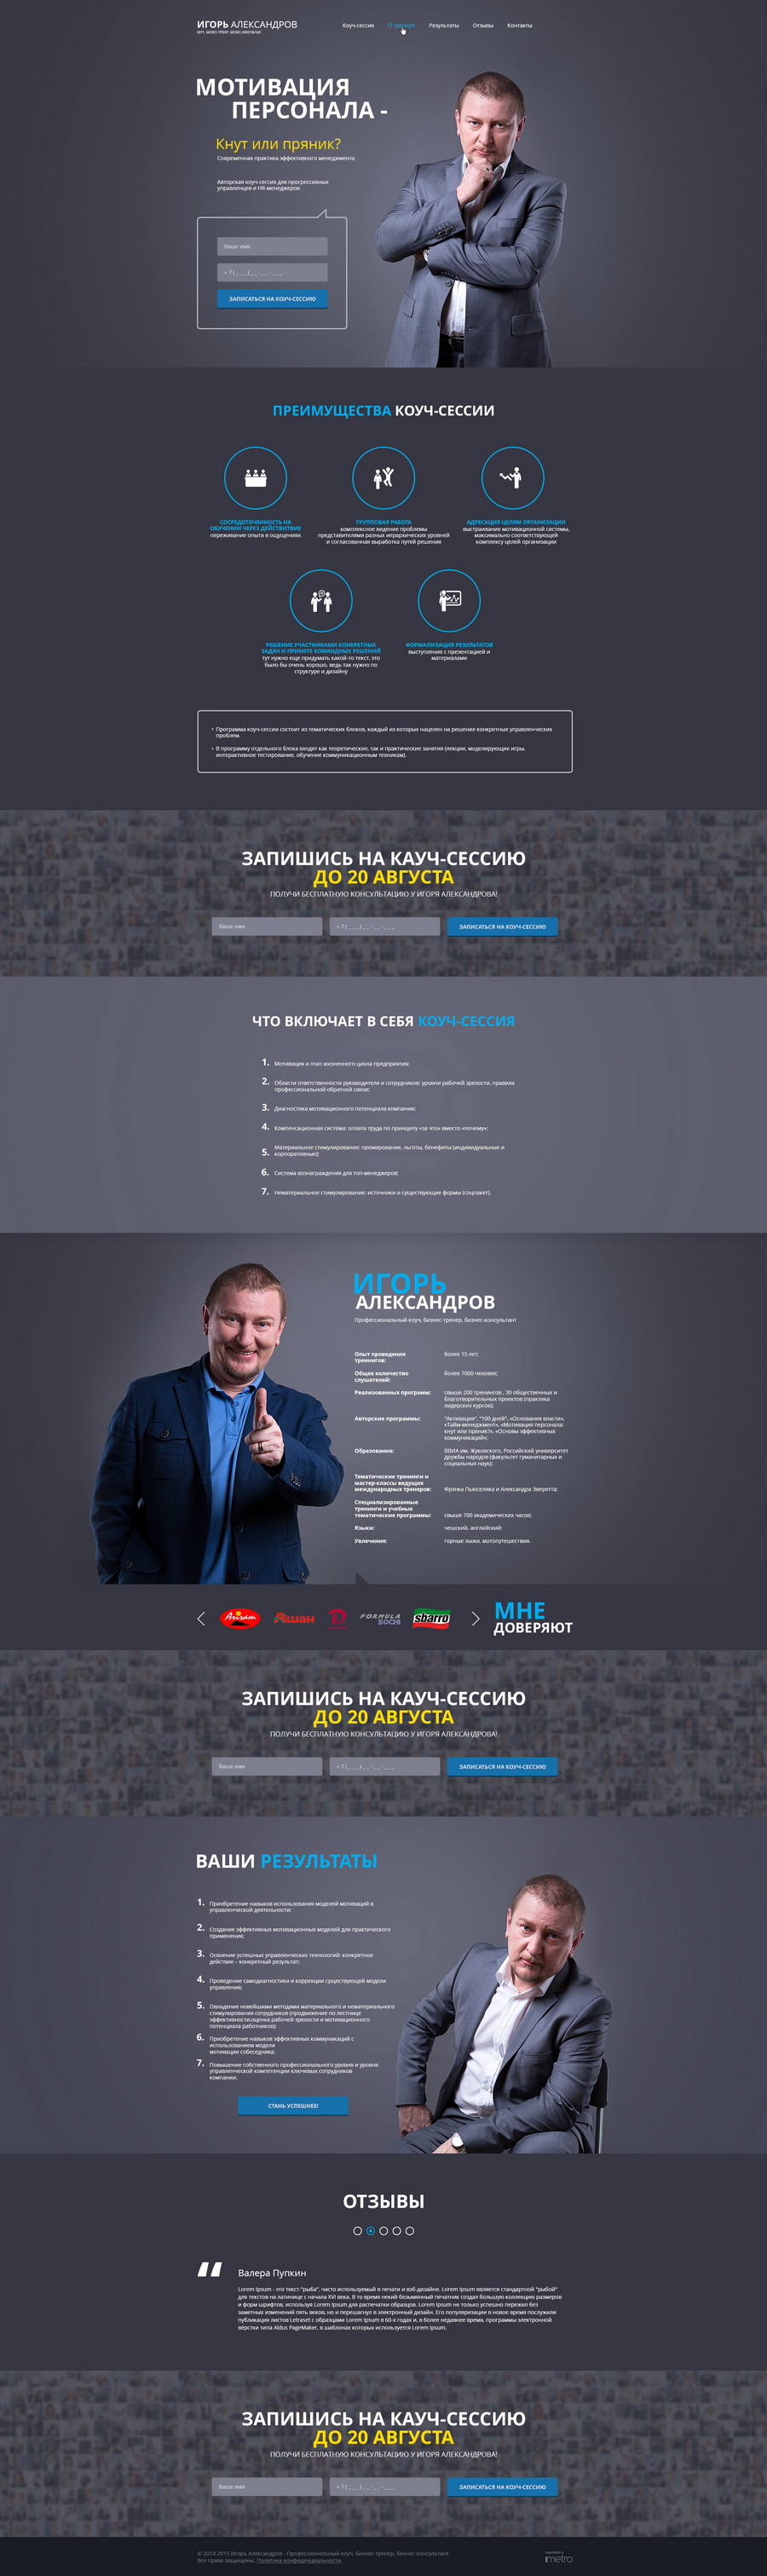 Разработка посадочной страницы для бизнес-тренера Игоря Александрова